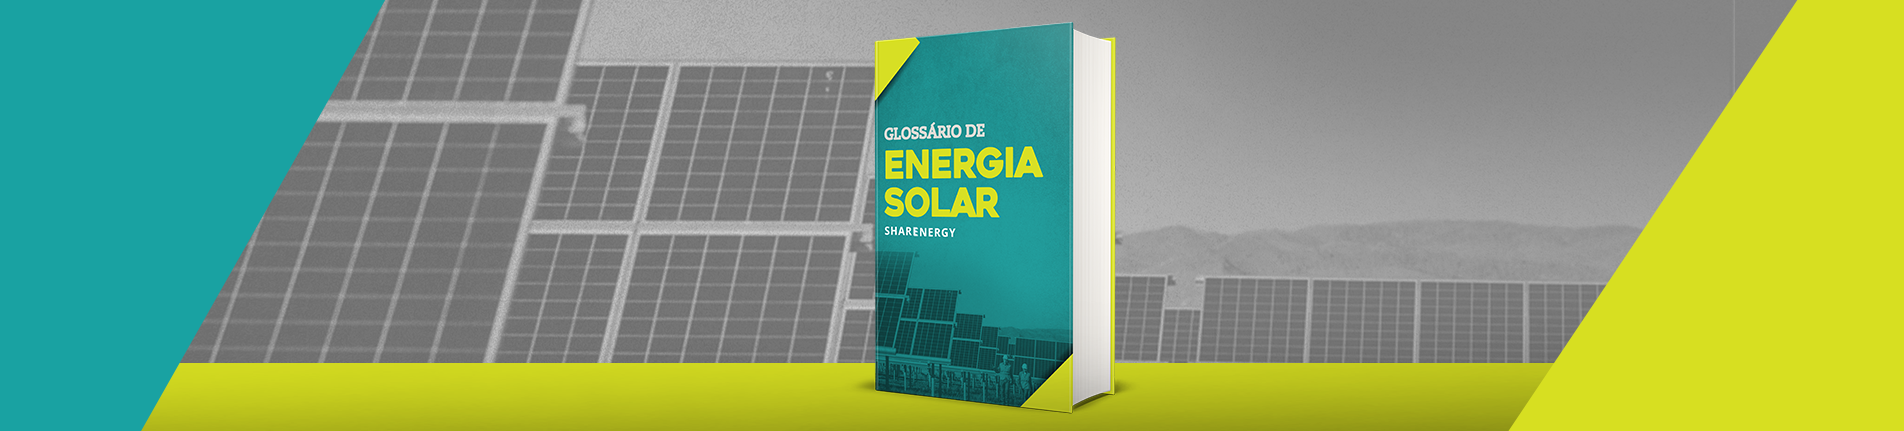 Glossário da Energia Solar